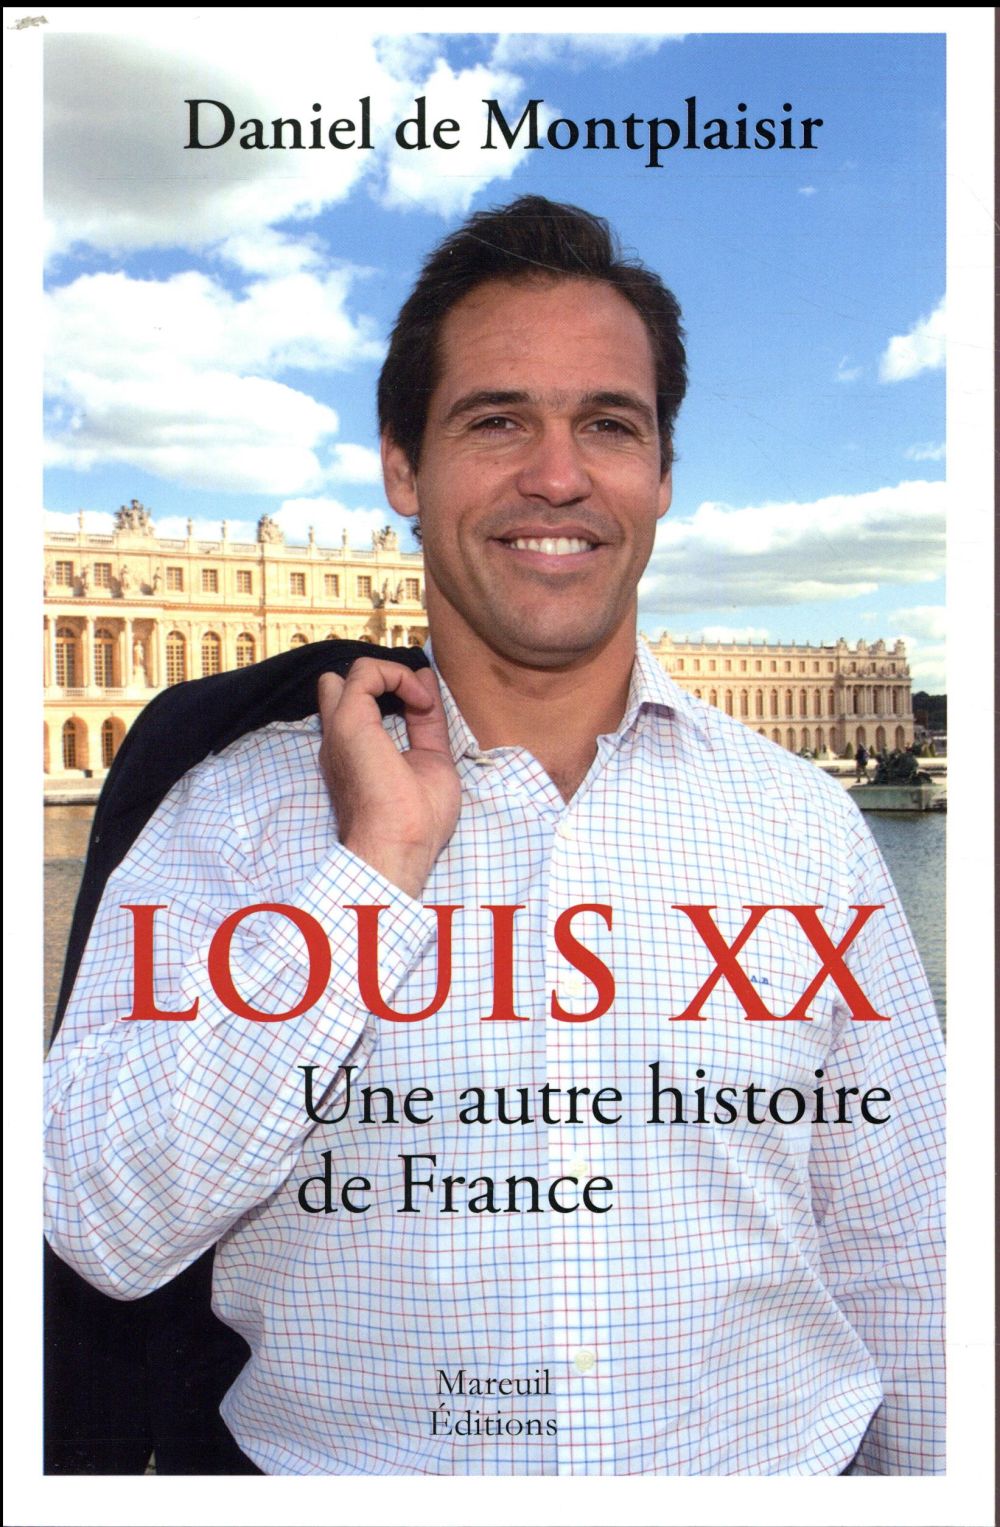 LOUIS XX UNE AUTRE HISTOIRE DE FRANCE